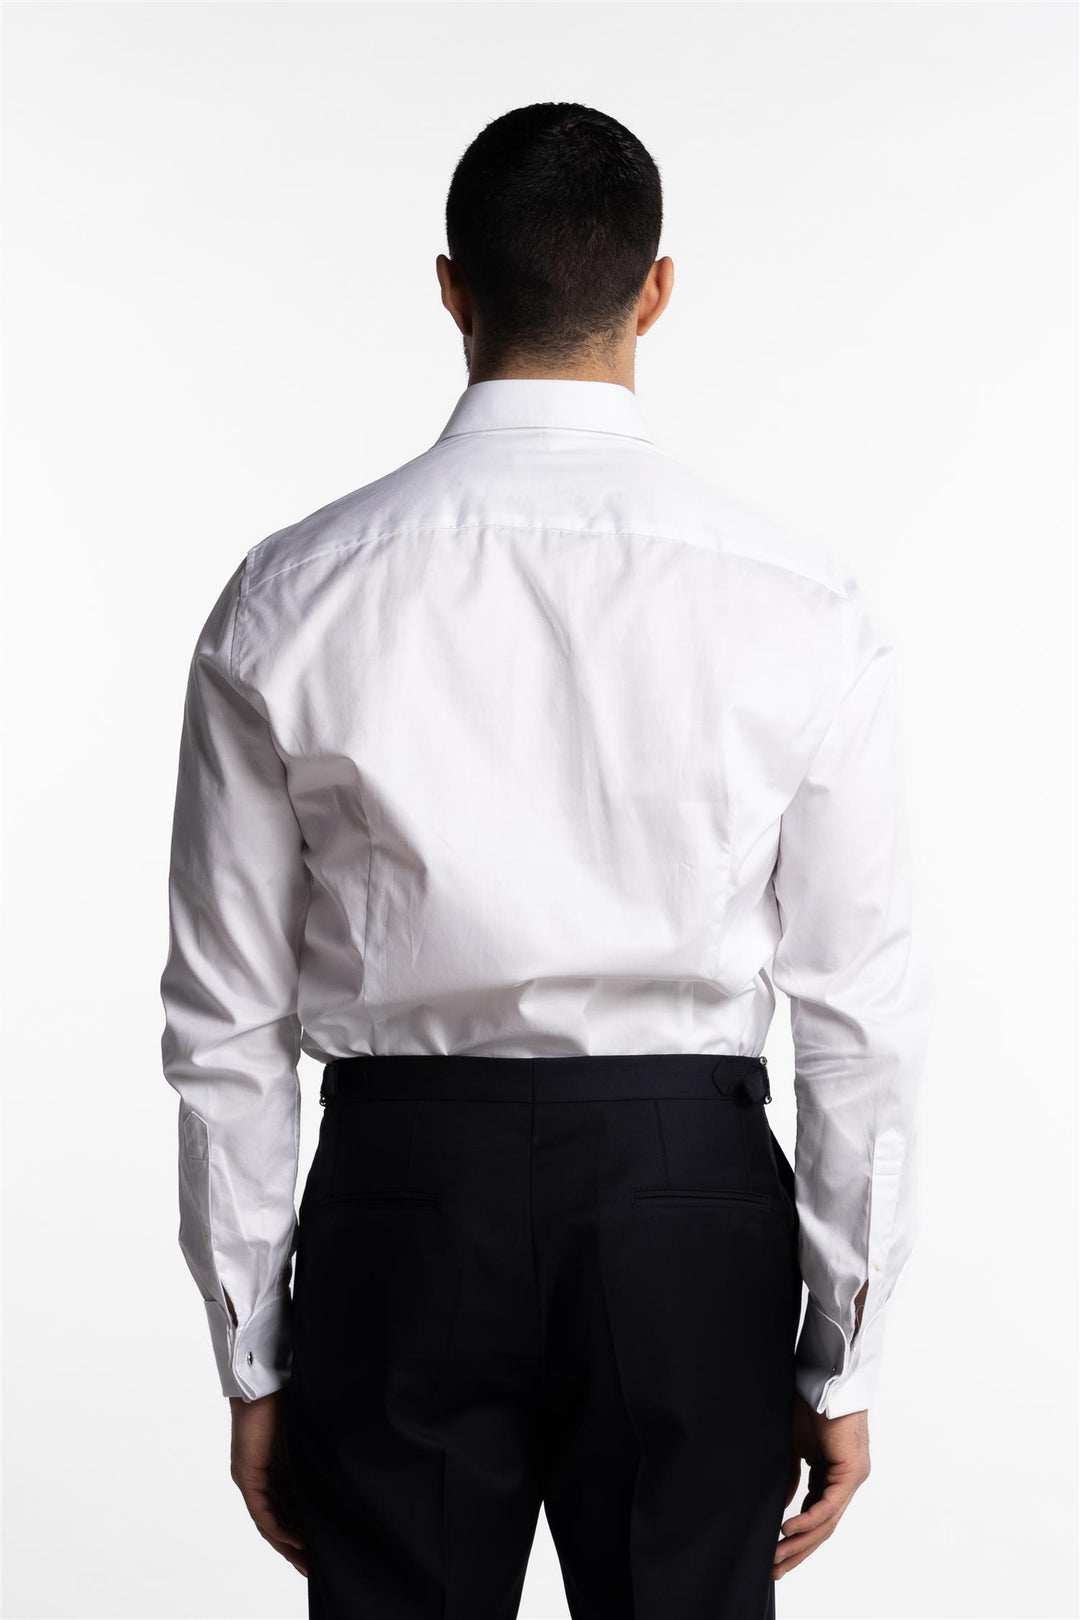 Slimline Twill Shirt French Cuffs White